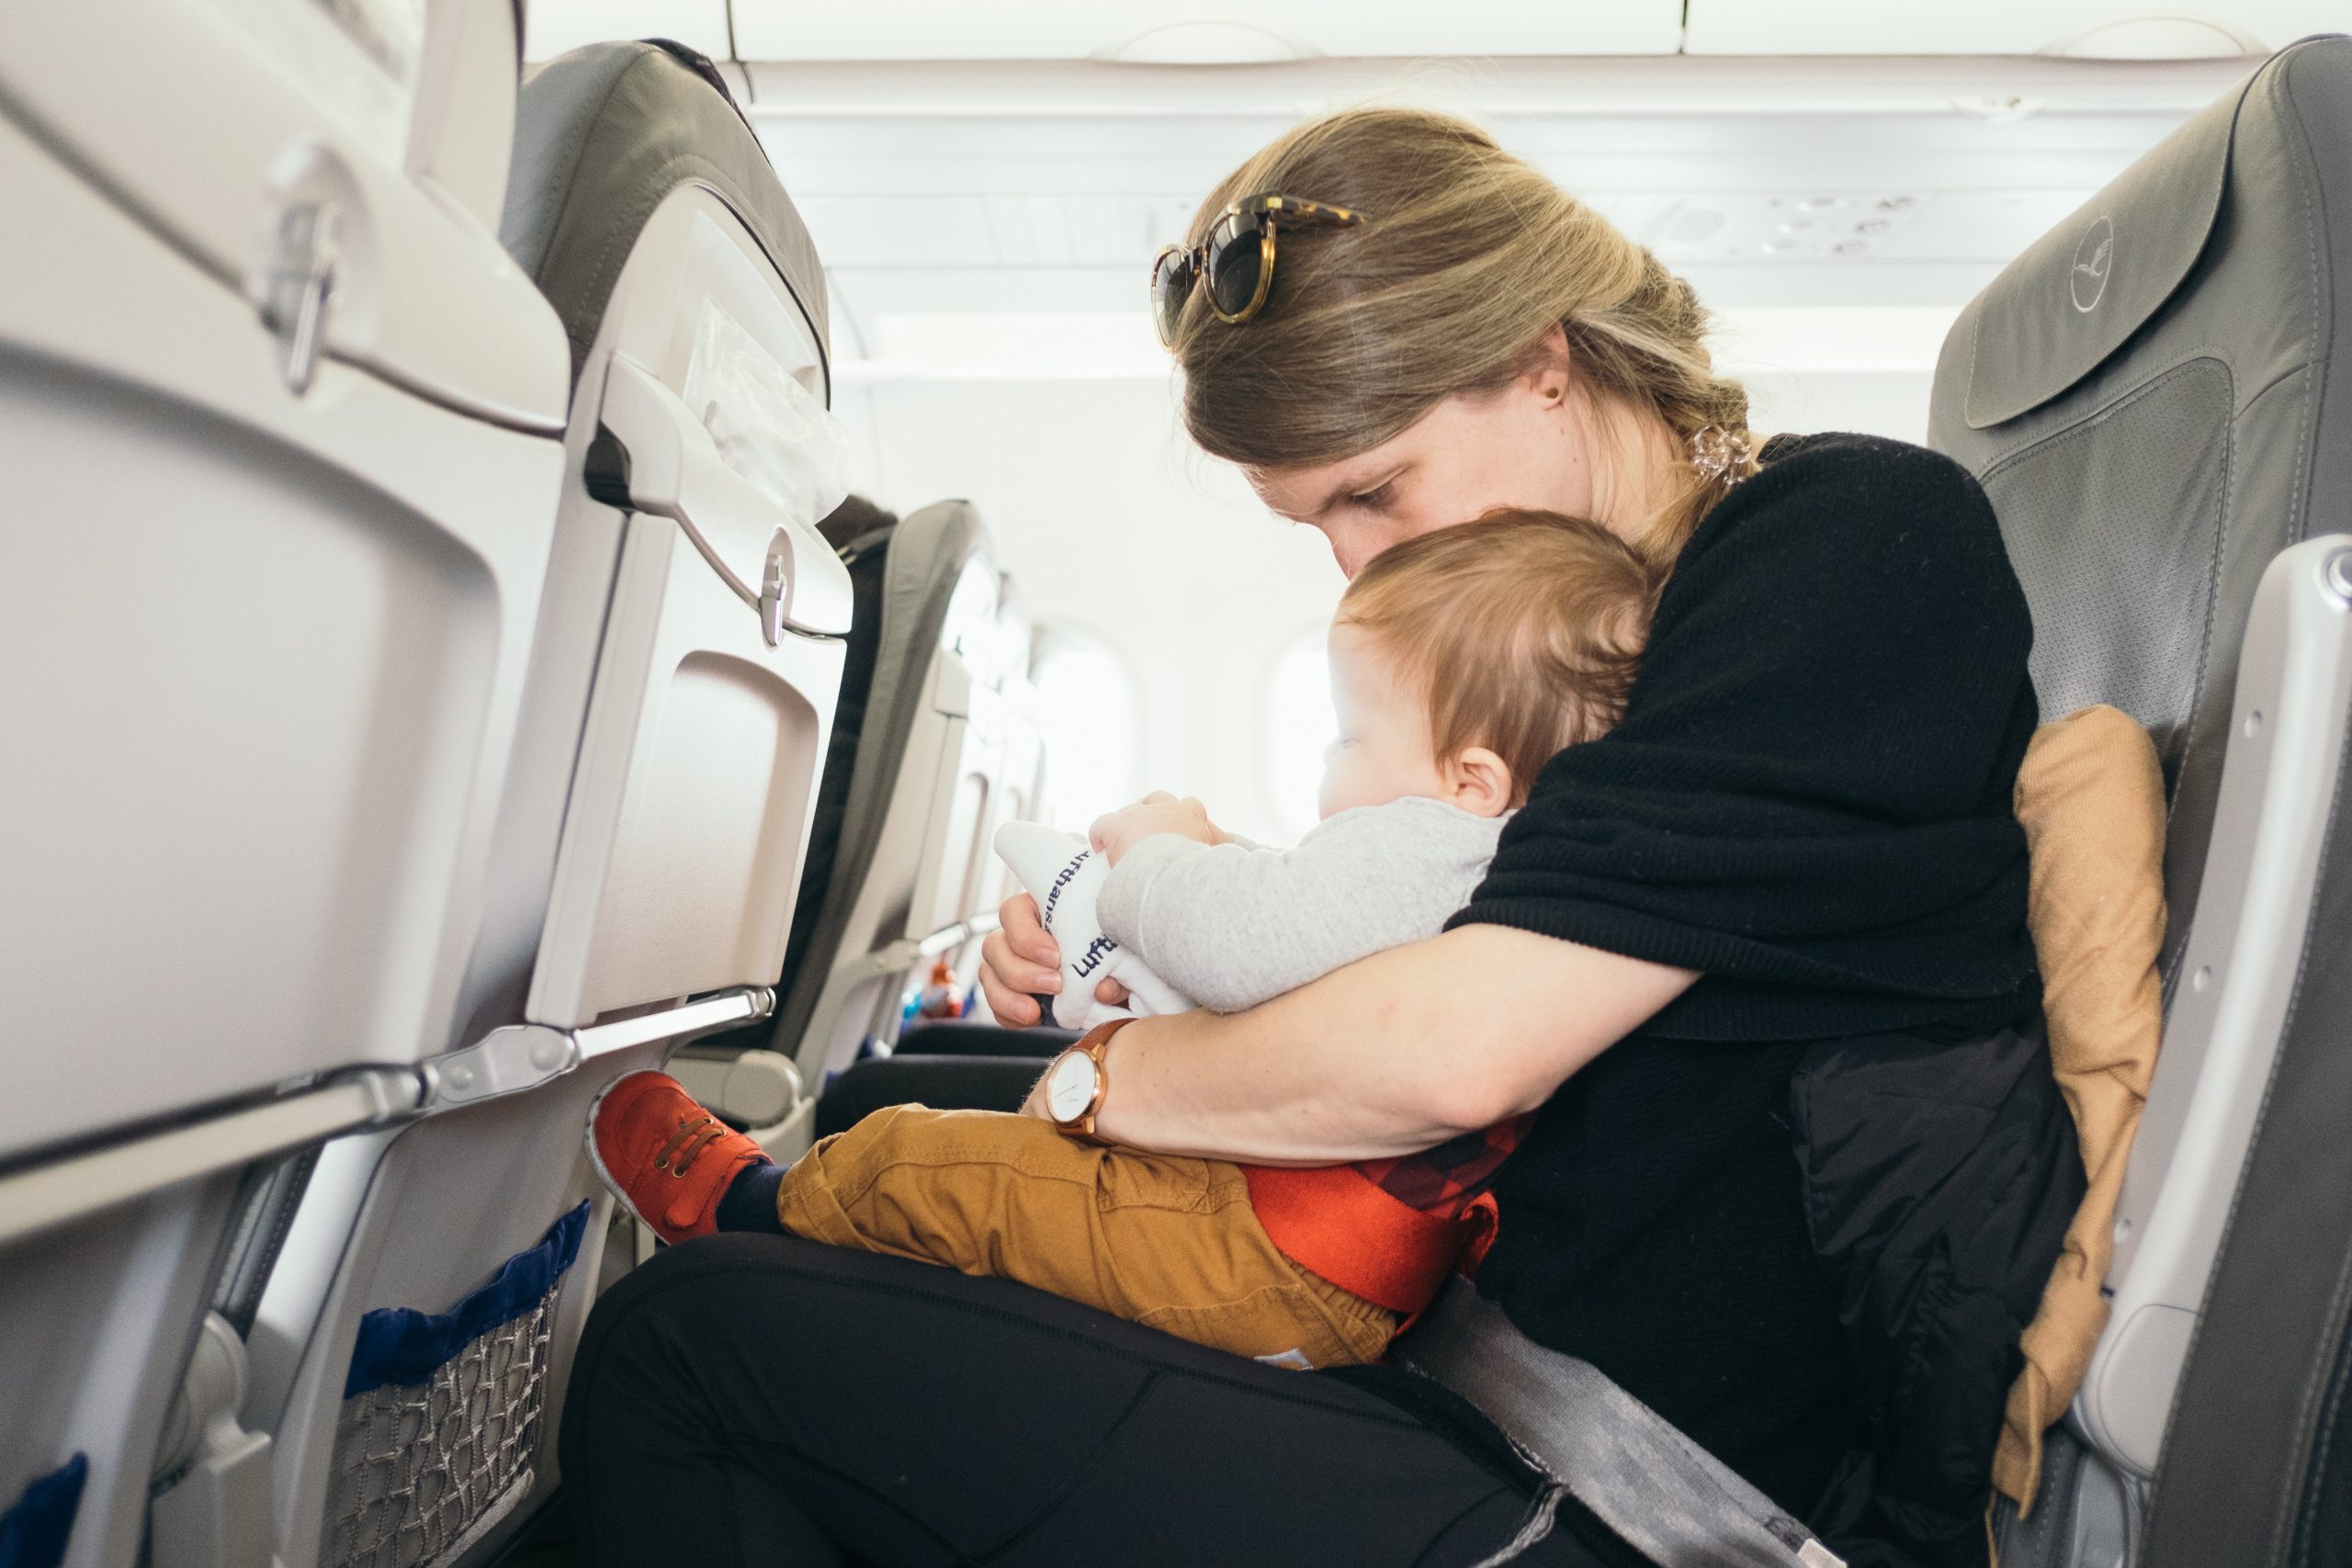 Las aerolíneas permiten a menores de 2 años viajar en regazos, aunque no es la opción más segura